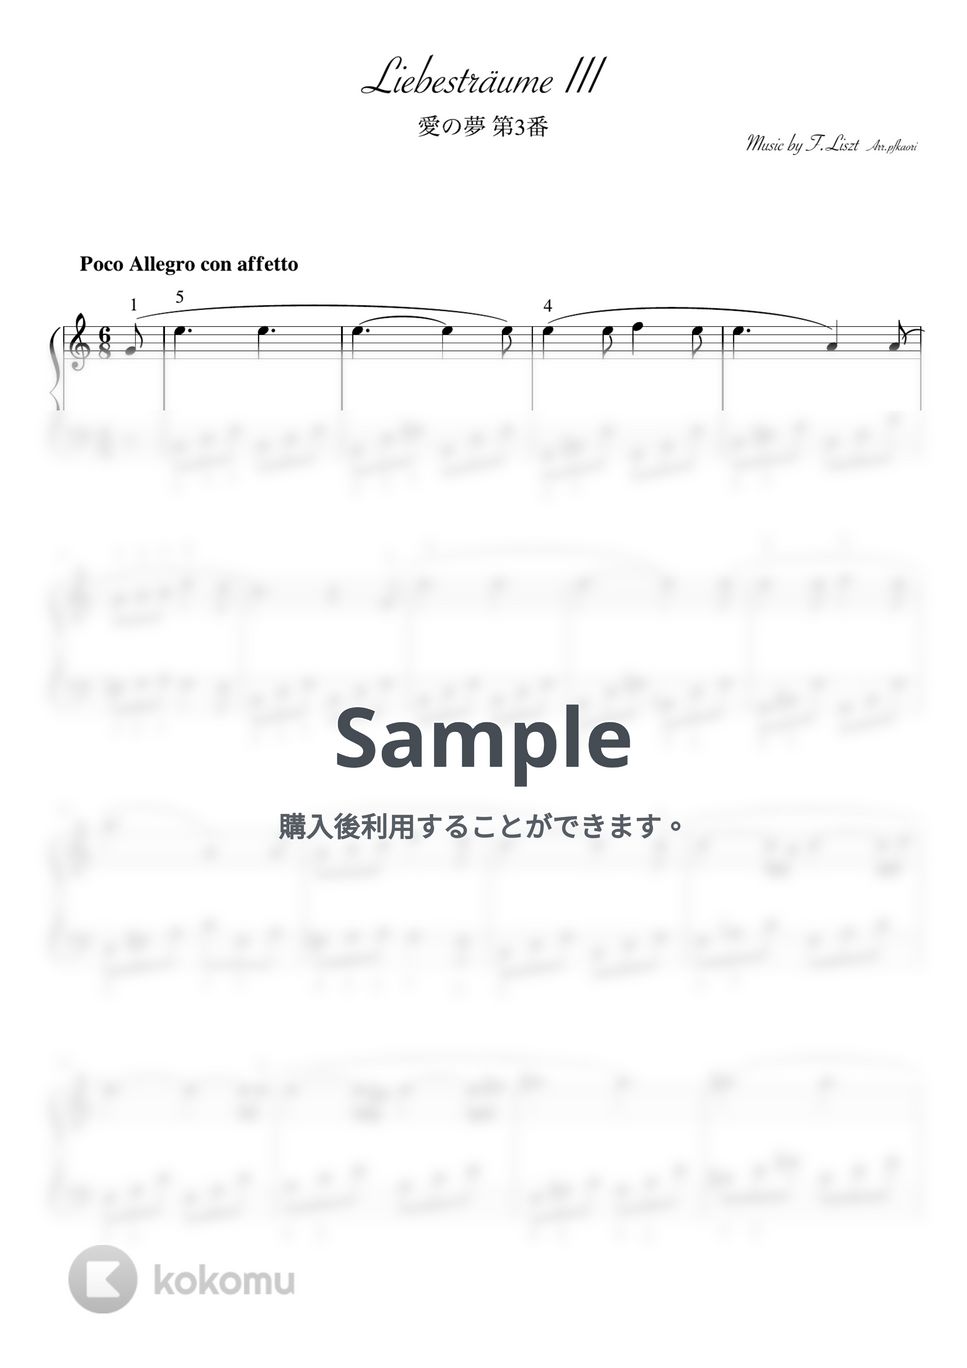 フランツ・リスト - 愛の夢第3番 (Cdur/ピアノソロ初〜中級) by pfkaori